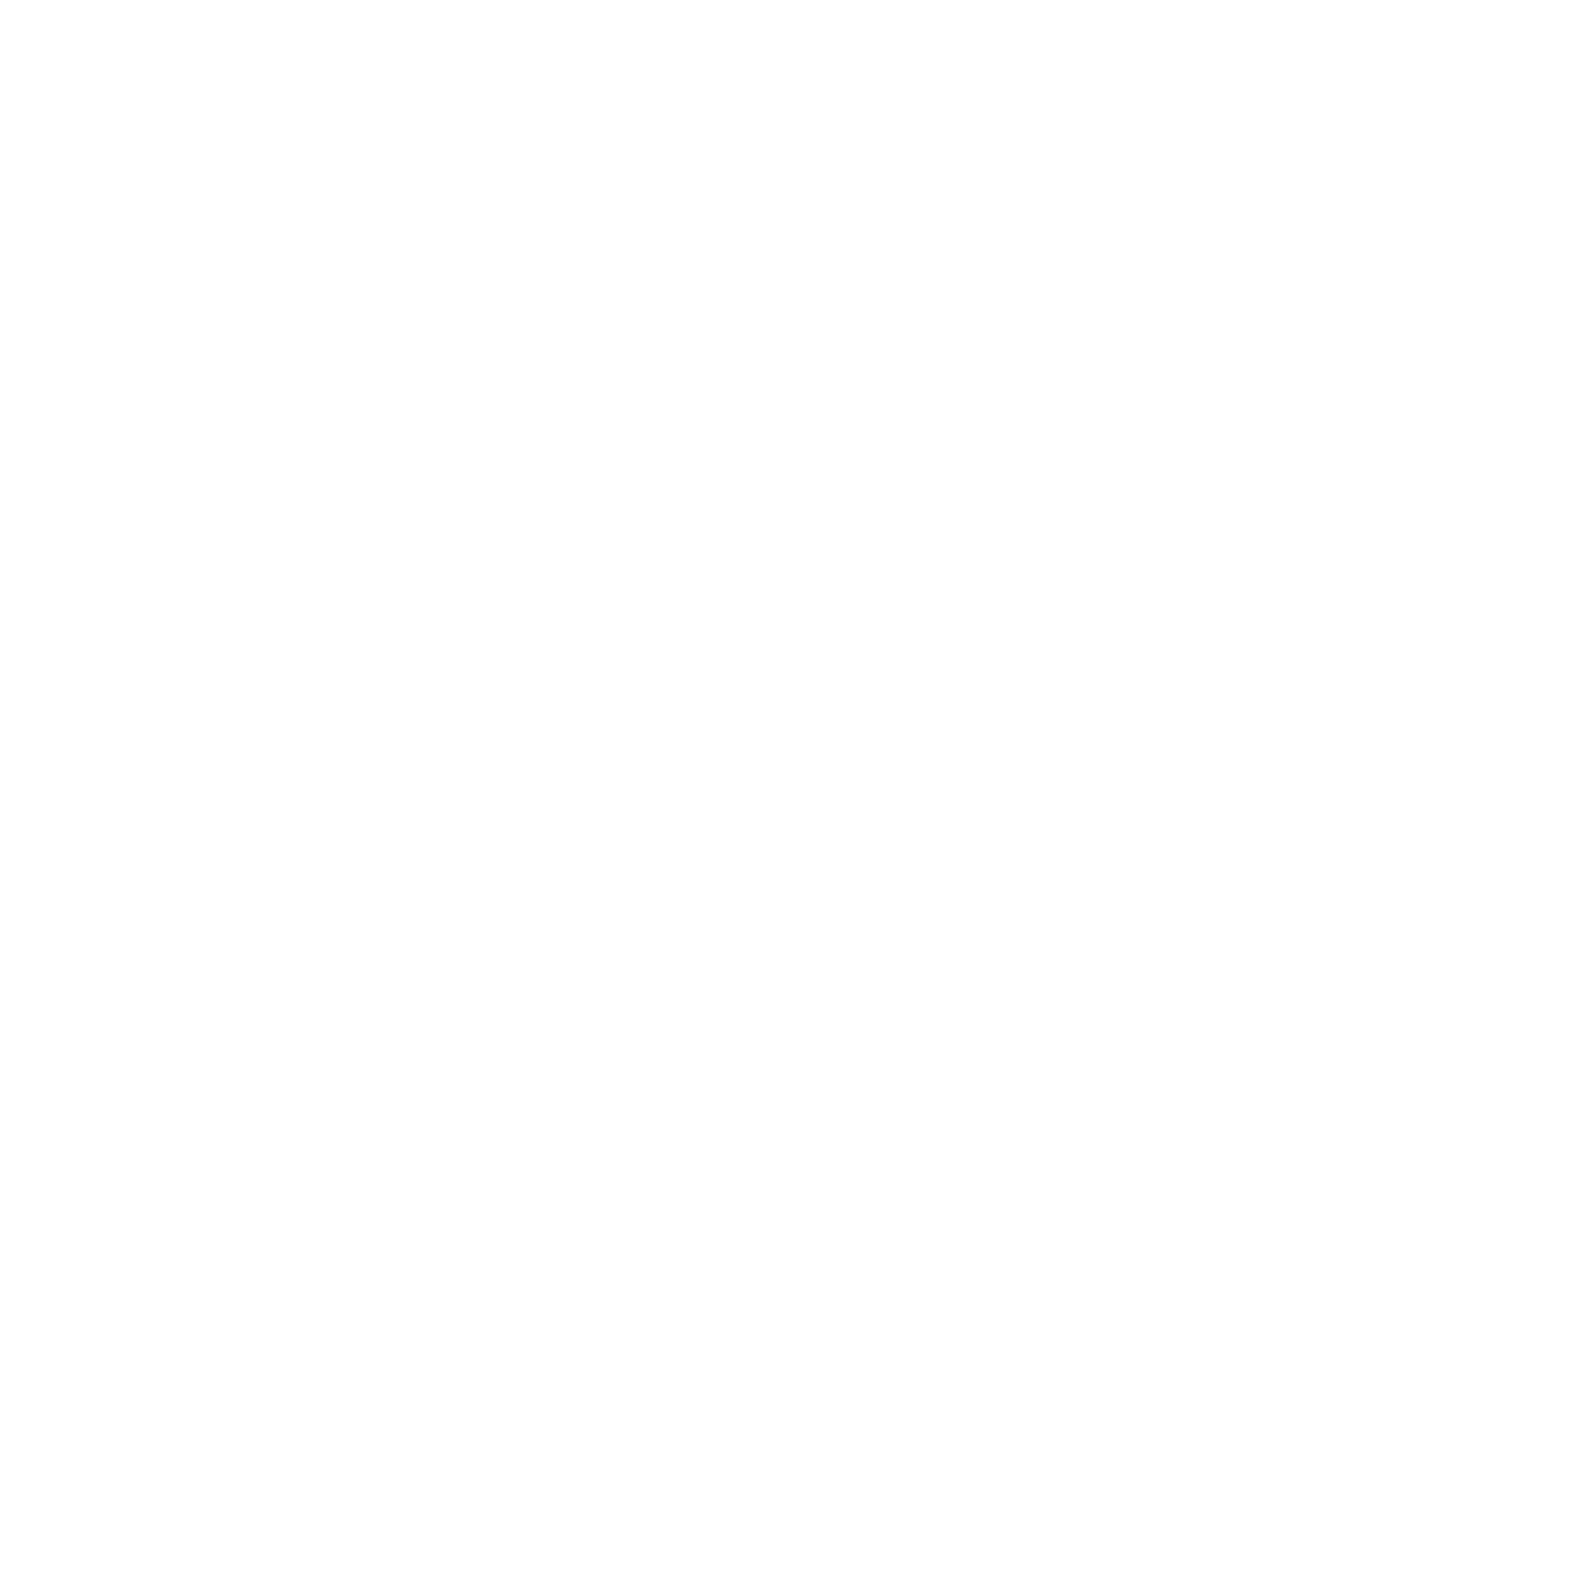 Dynatrace logo for dark backgrounds (transparent PNG)